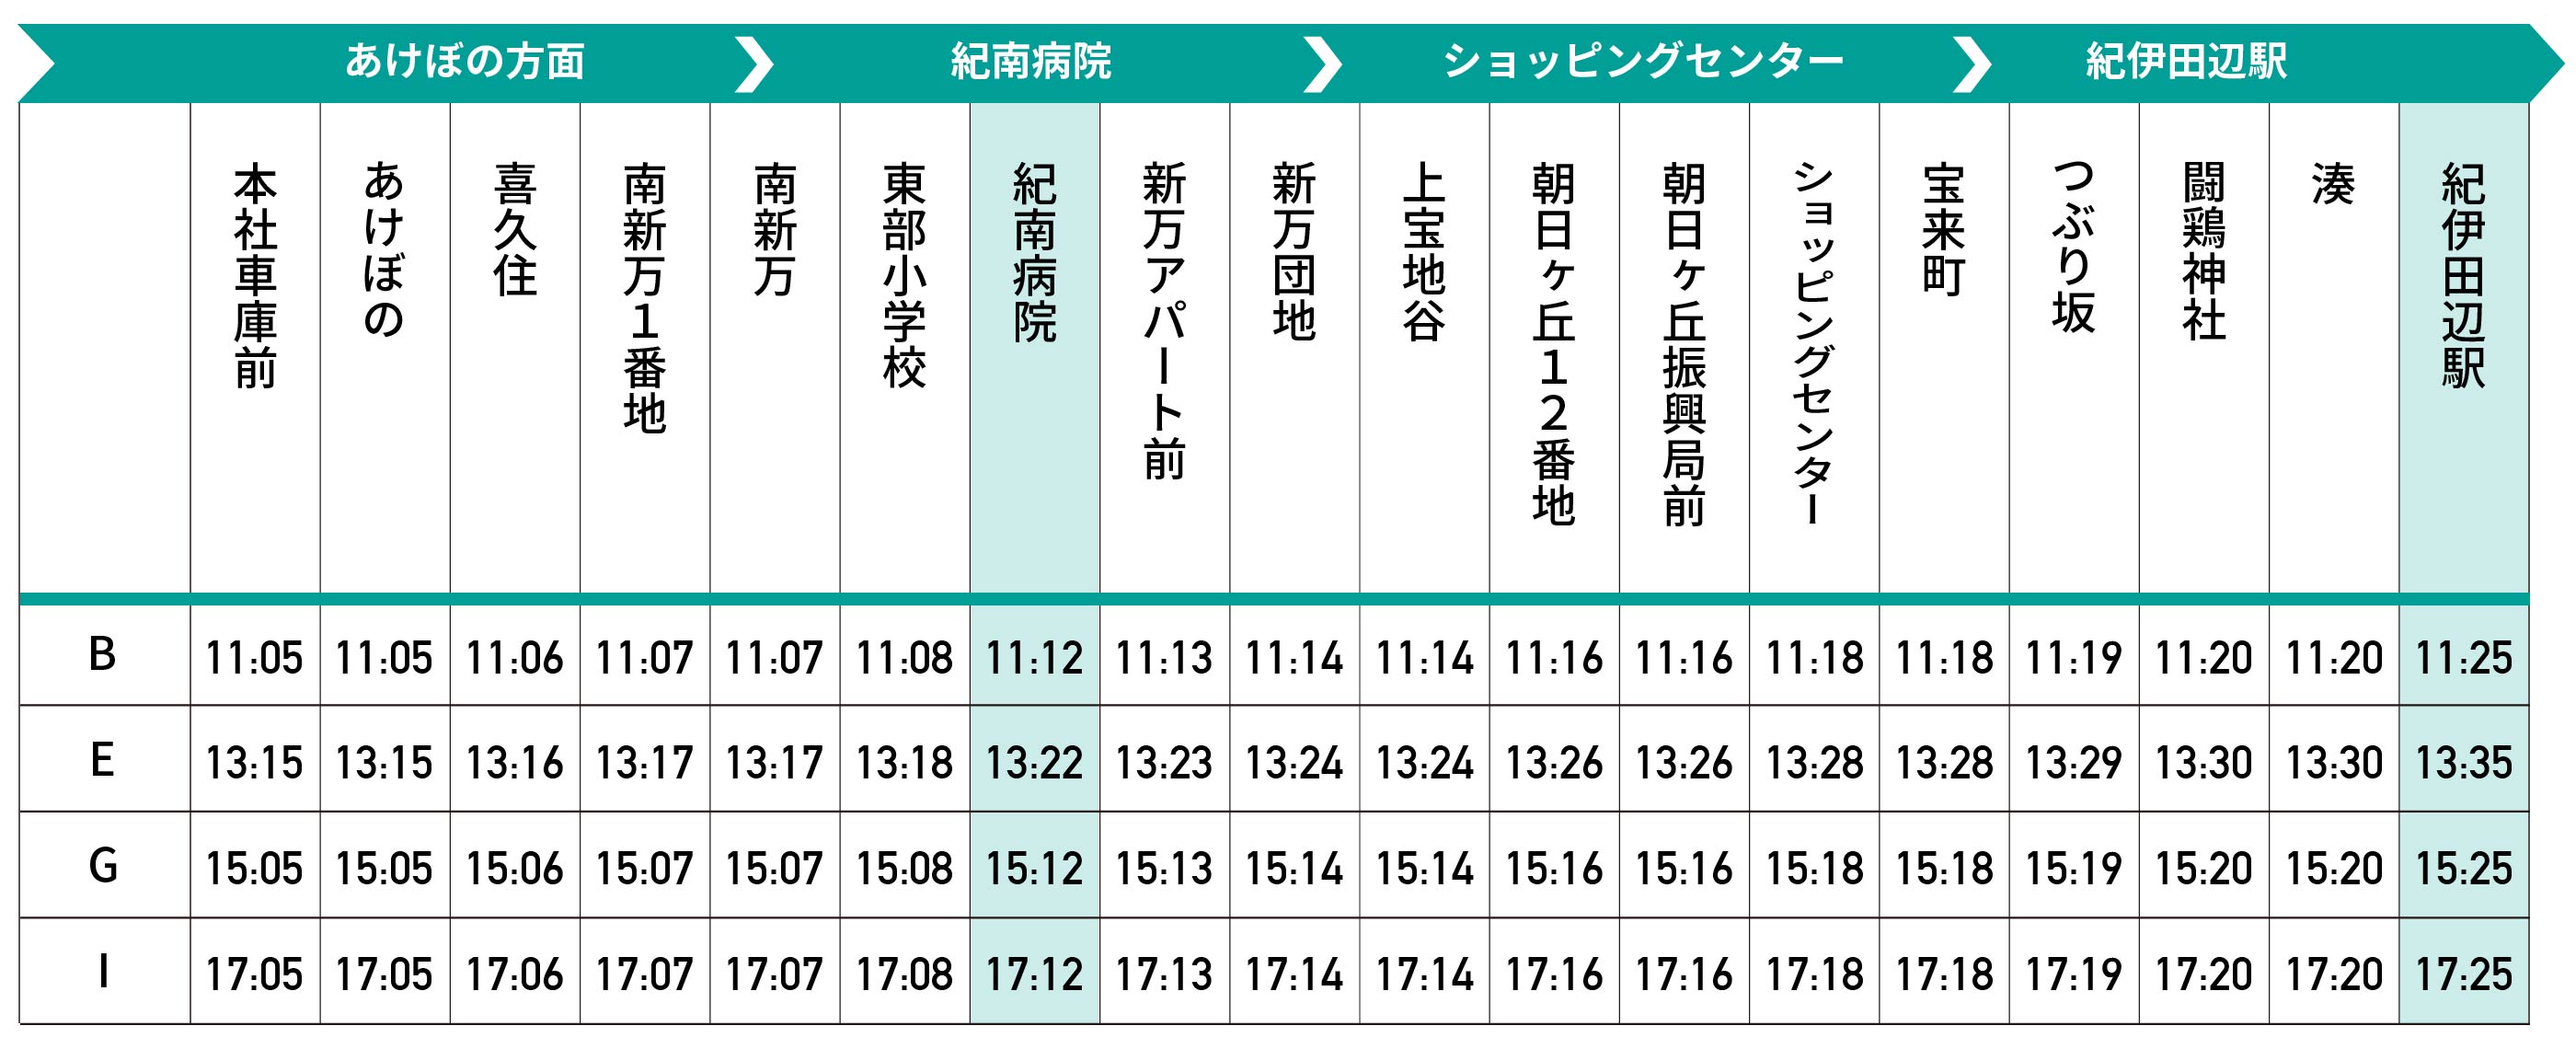 紀南病院、あけぼの方面、ショッピングセンター、紀伊田辺駅時刻表